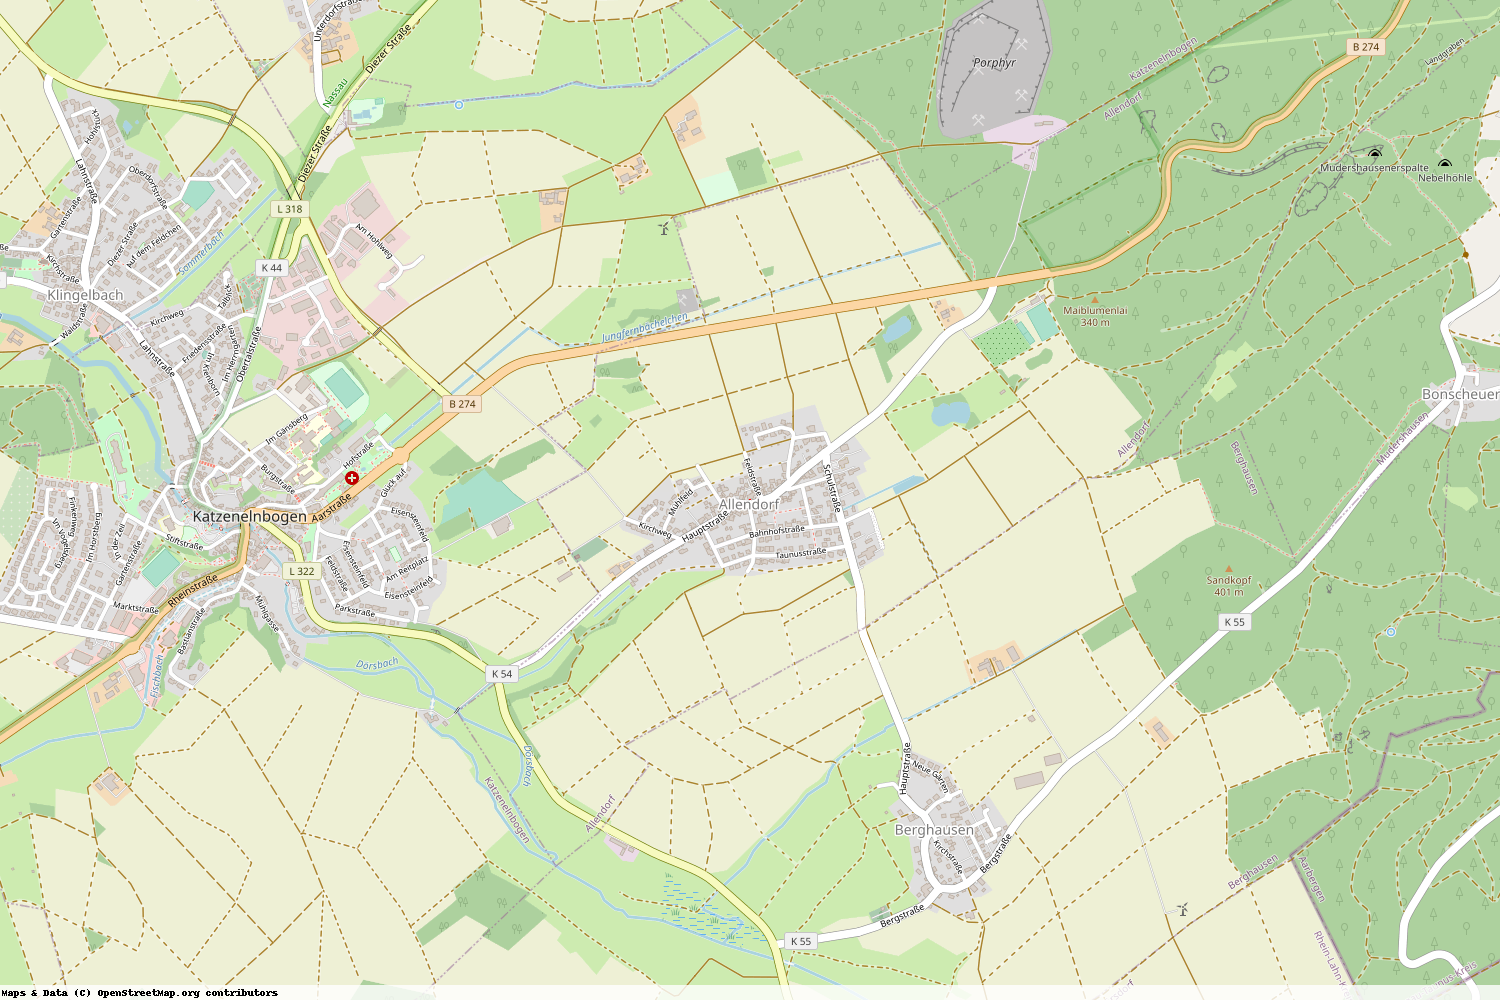 Ist gerade Stromausfall in Rheinland-Pfalz - Rhein-Lahn-Kreis - Allendorf?